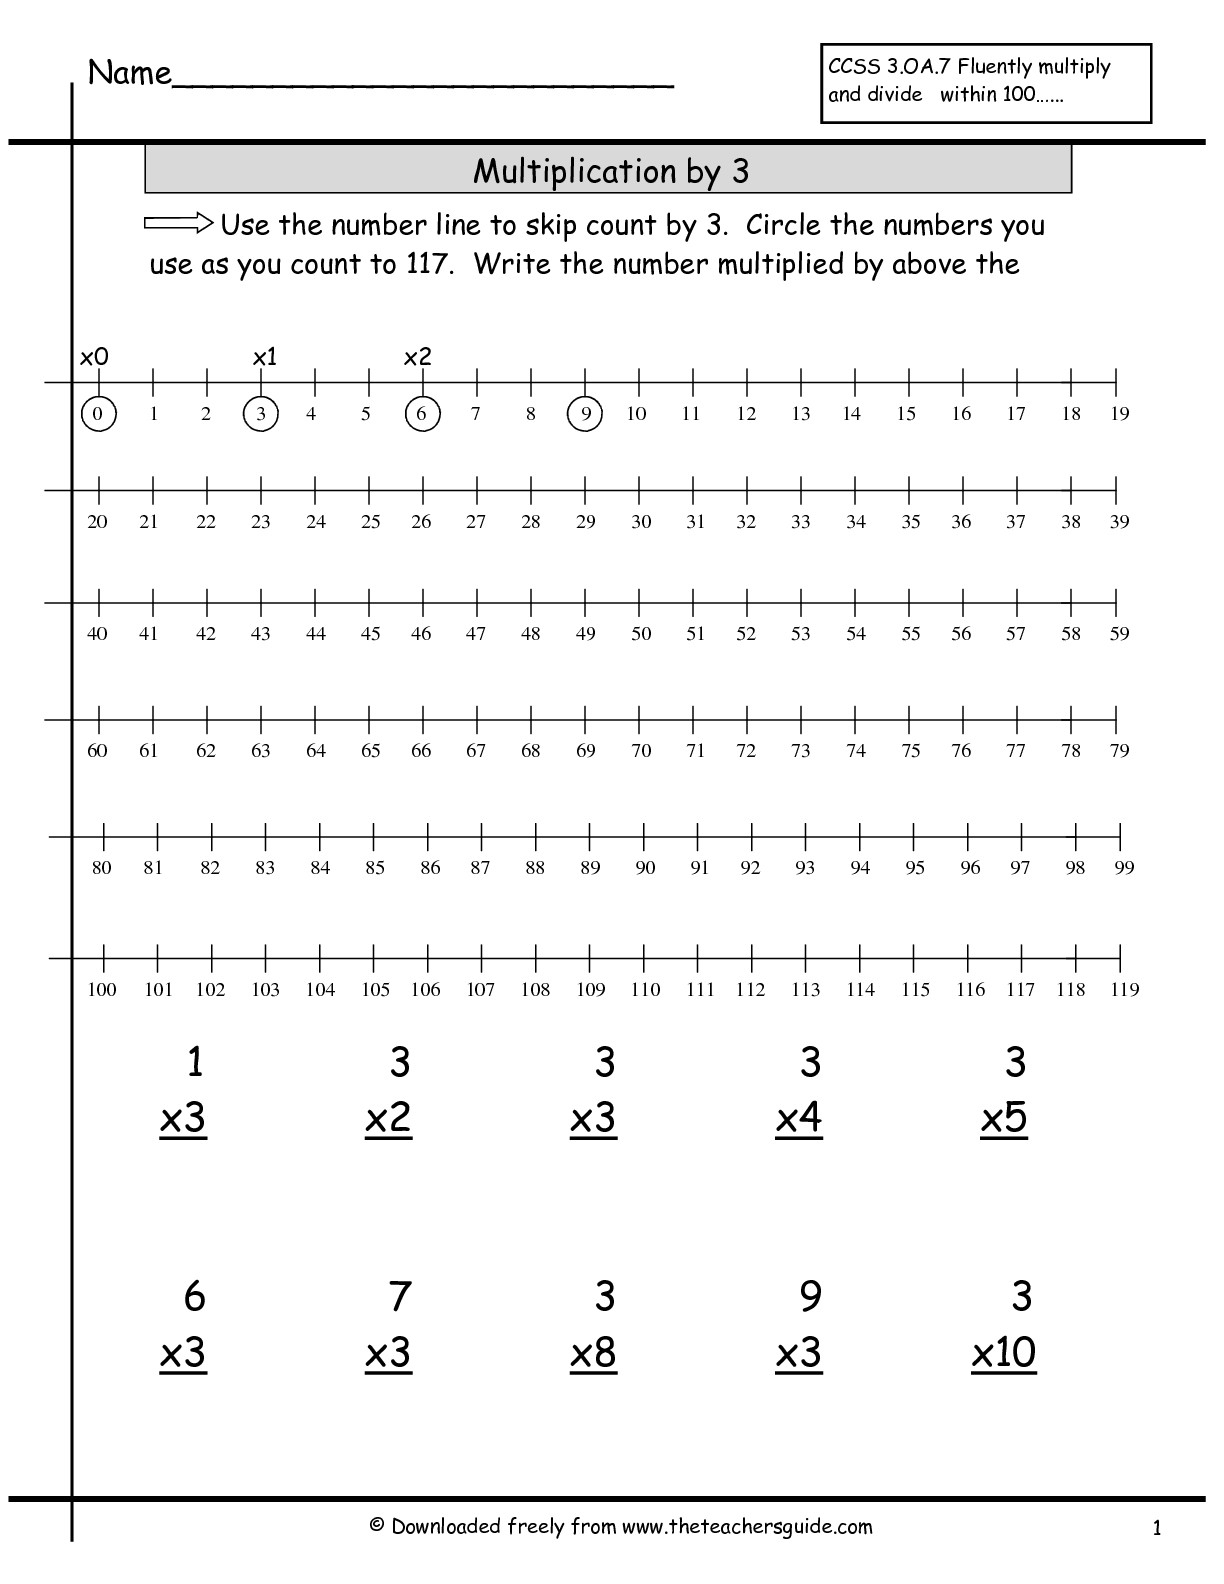 multiplication-worksheets-number-line-printable-multiplication-flash